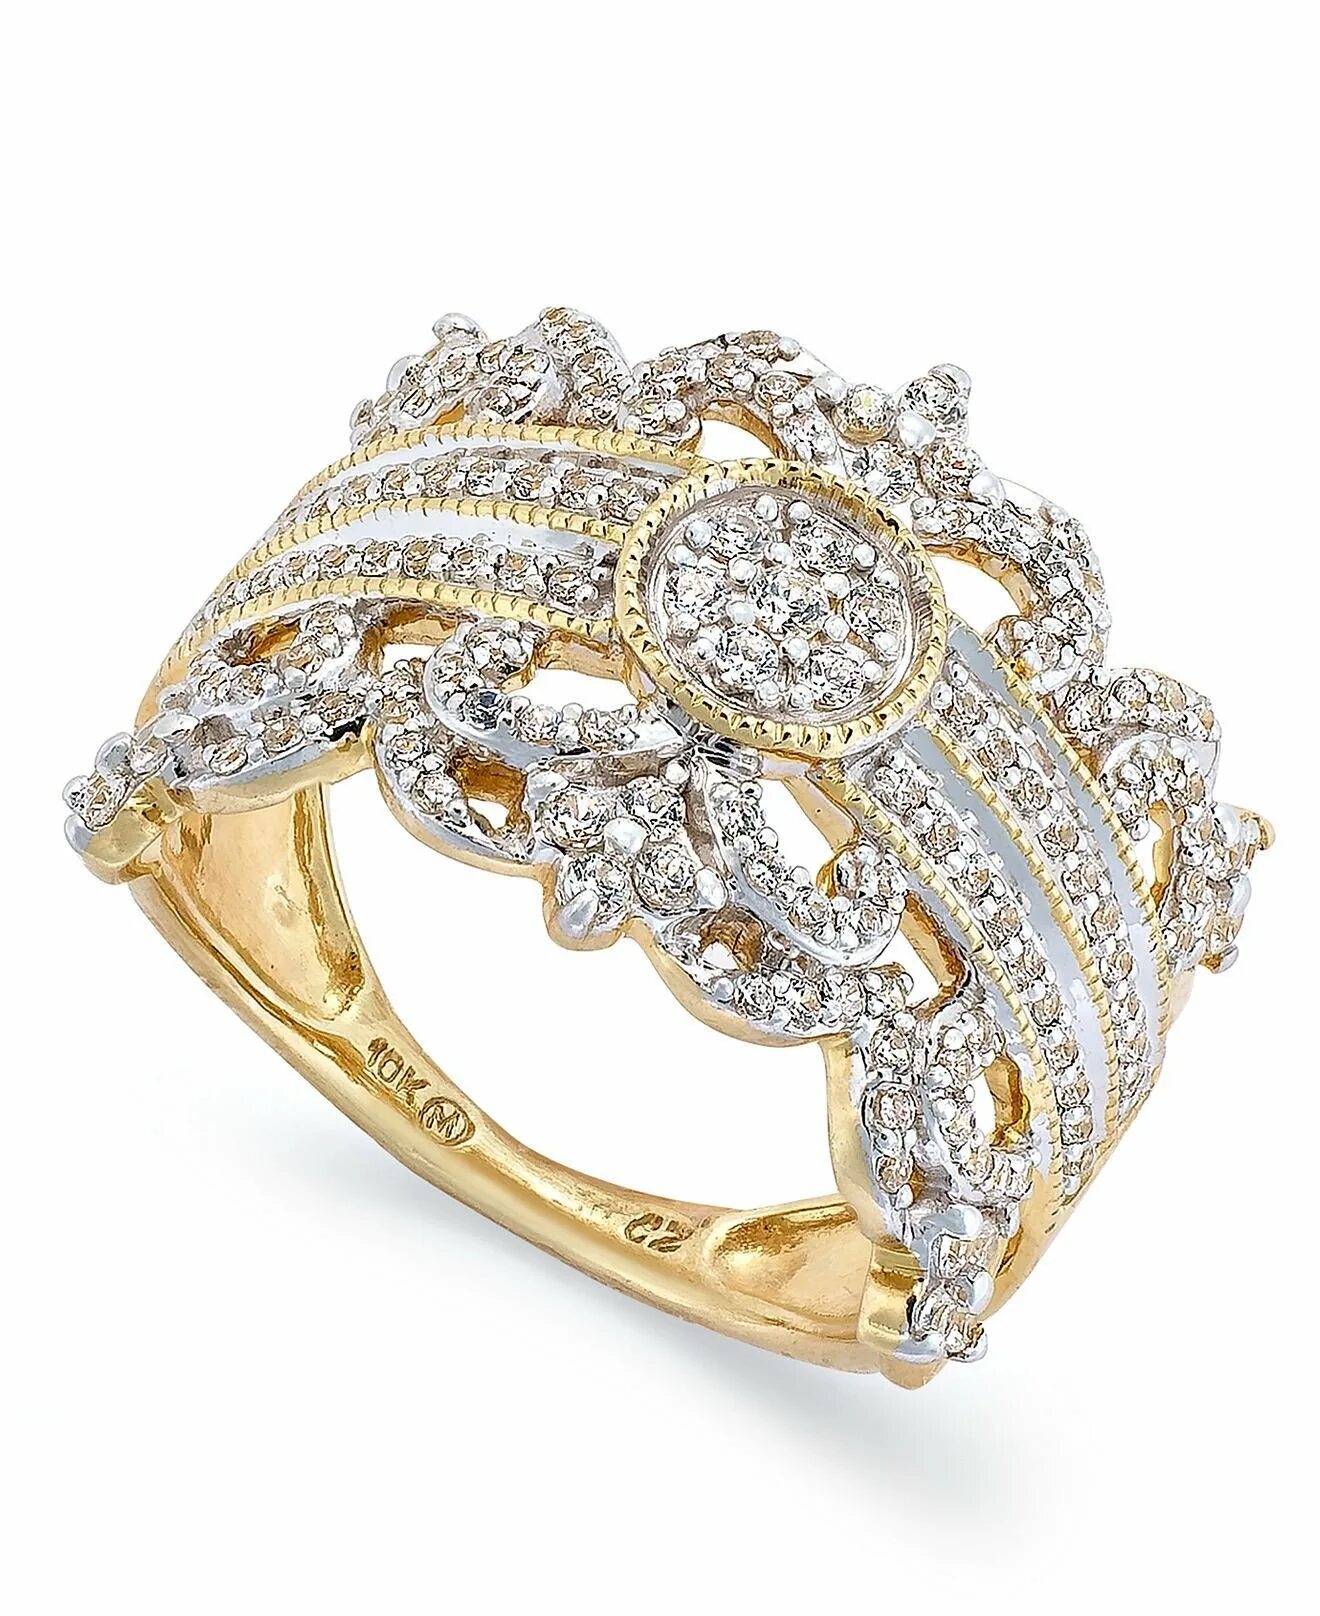 Дорогое золотое кольцо. Золотое кольцо с бриллиантом кушон. Золотое кольцо с бриллиантами julianni. Кольцо Голд Даймонд. Золотое кольцо с бриллиантом женское кушон.